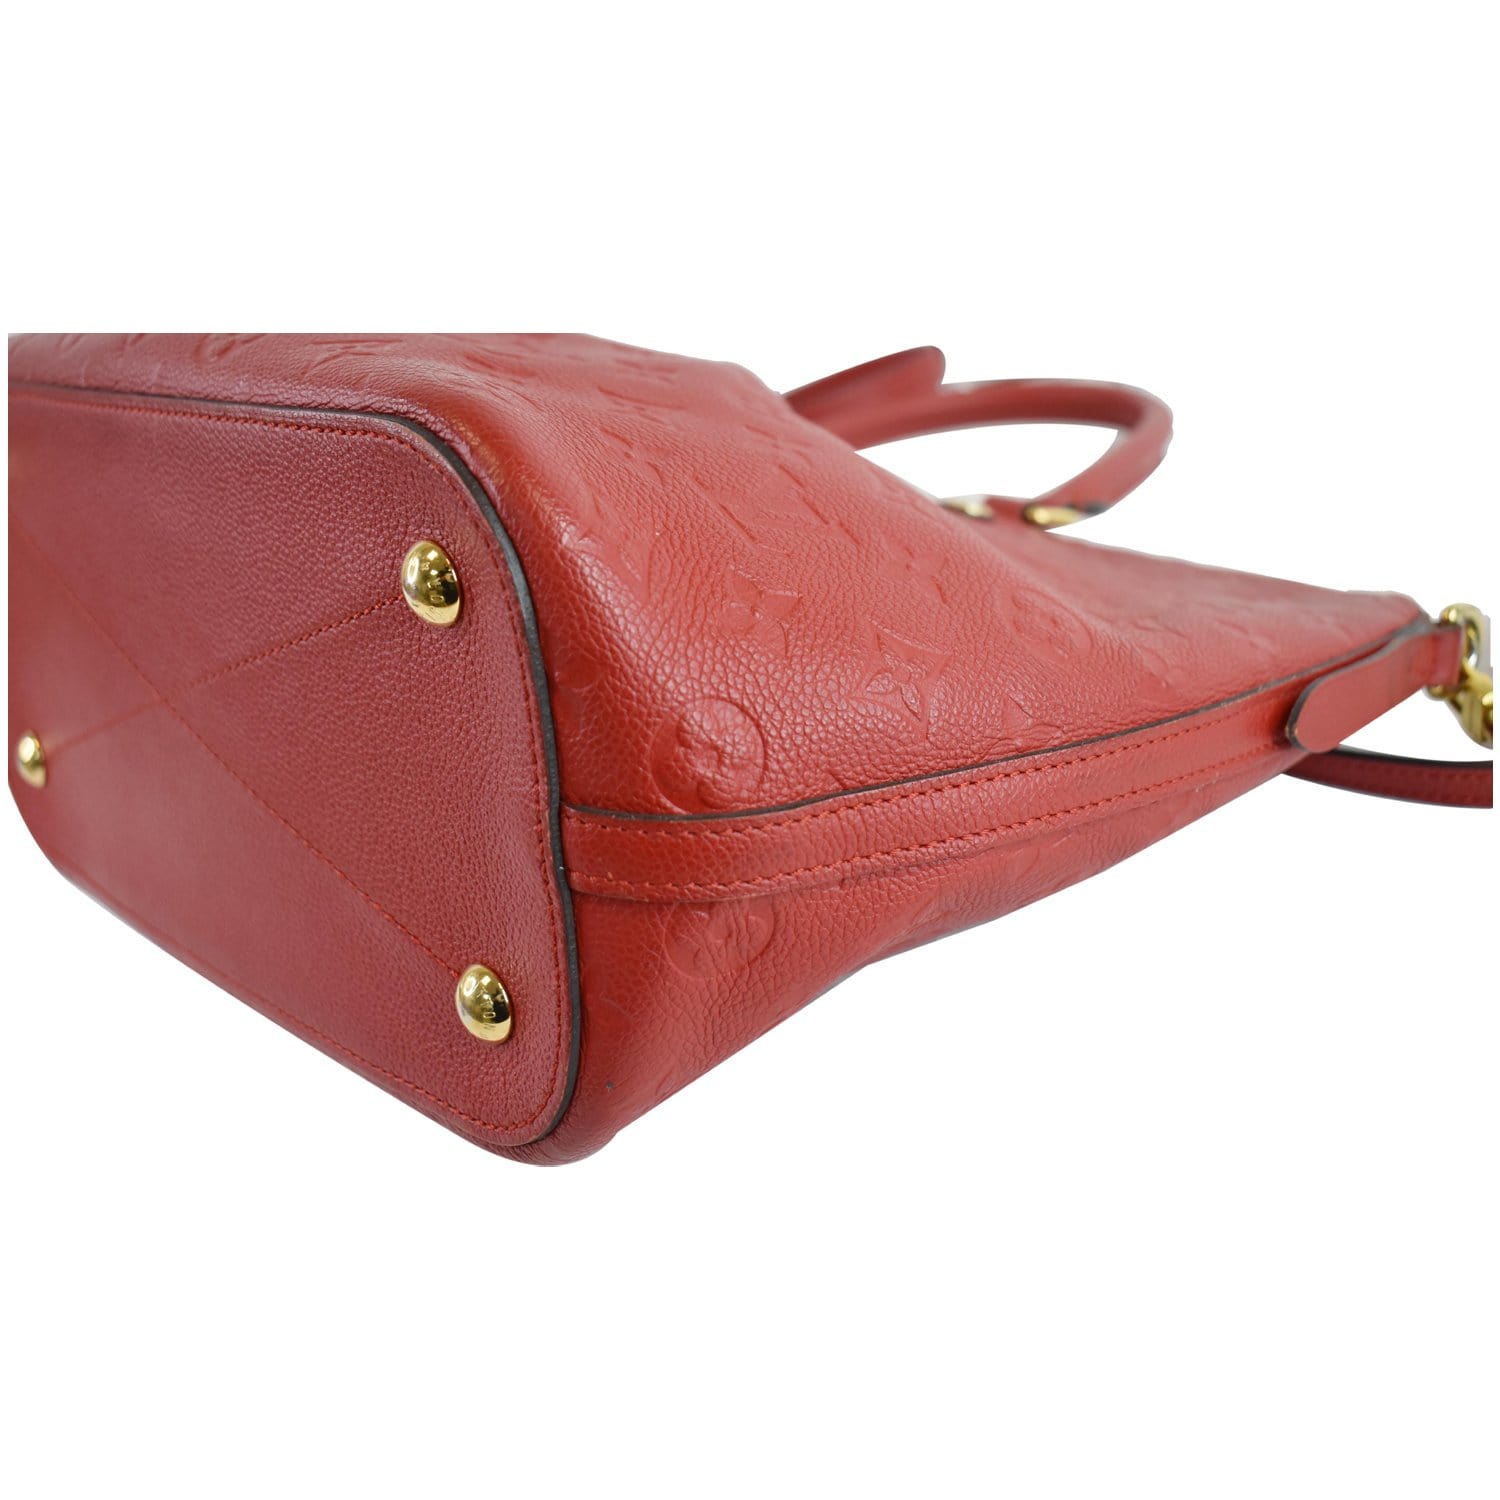 Mazarine leather handbag Louis Vuitton Pink in Leather - 17076850